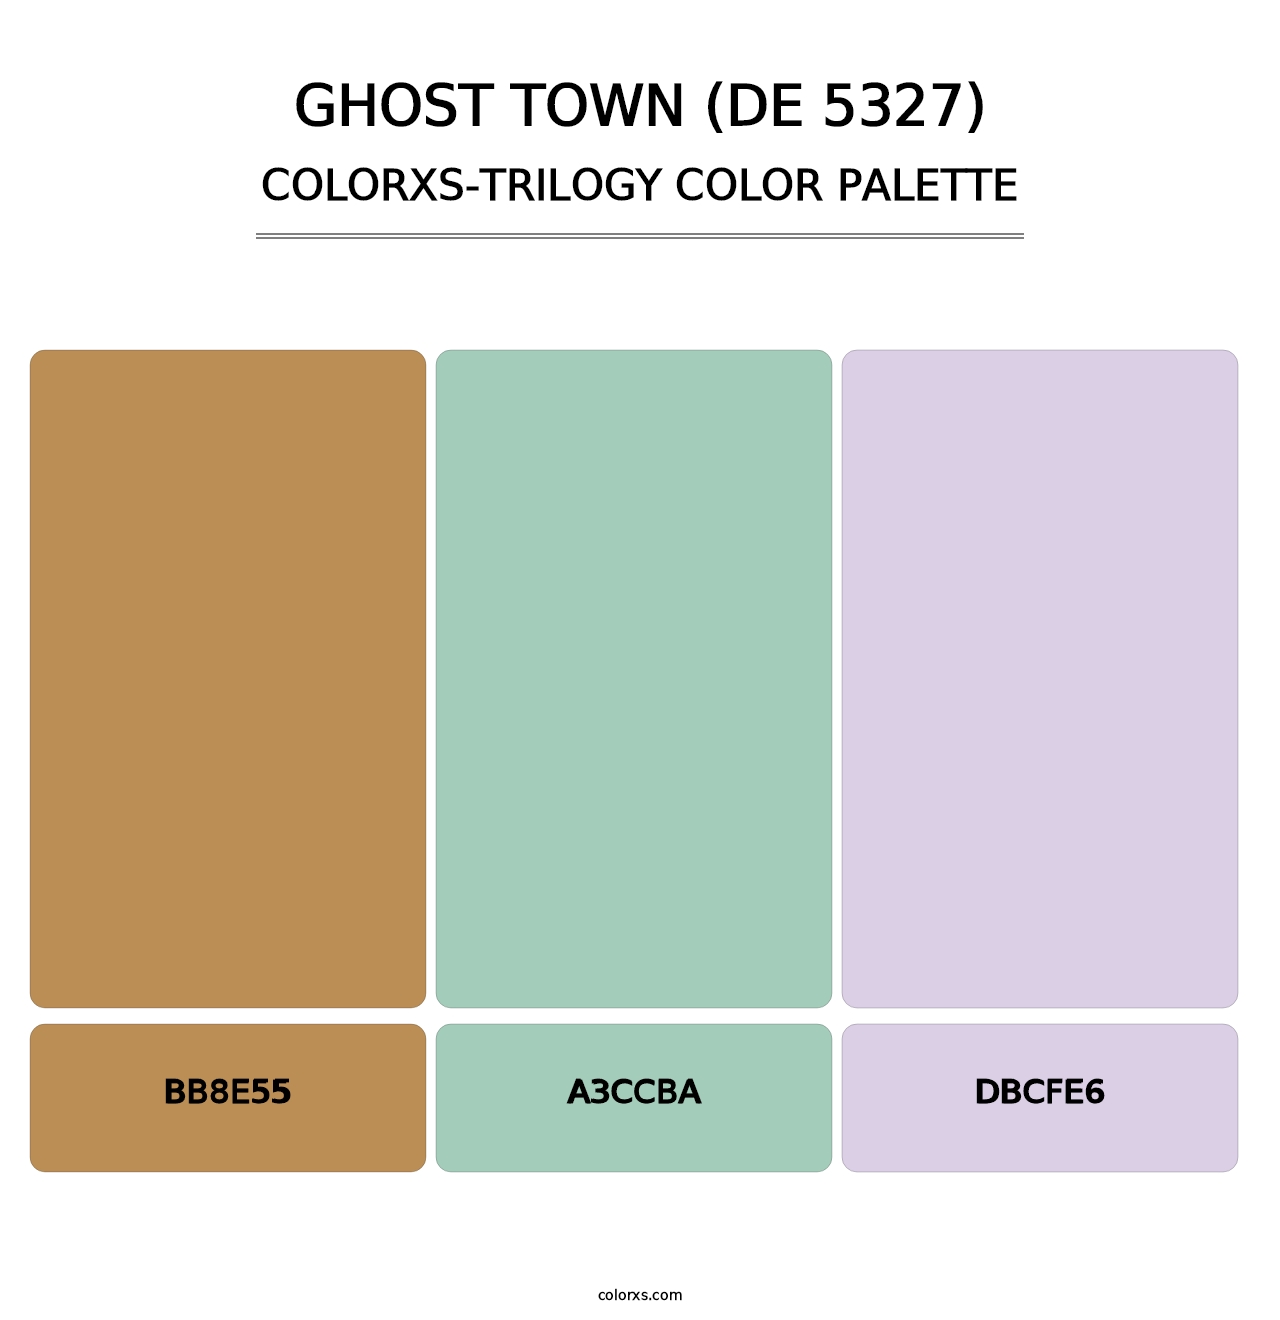 Ghost Town (DE 5327) - Colorxs Trilogy Palette